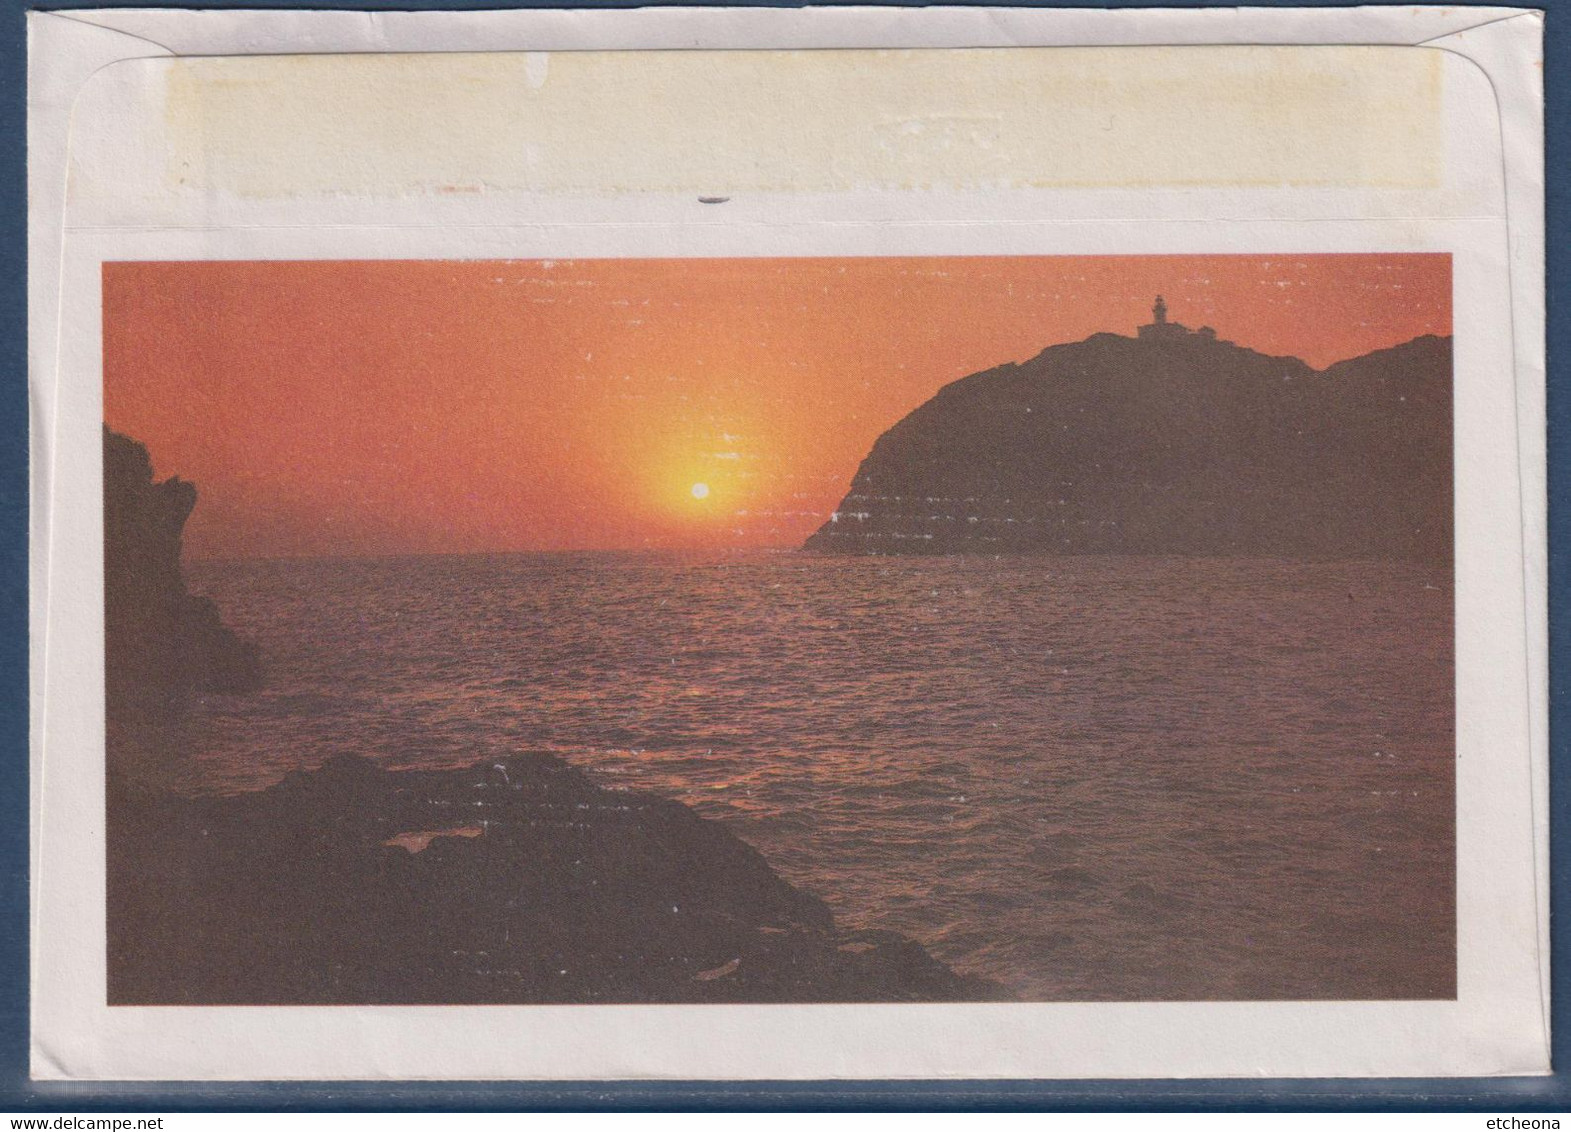 Enveloppe Illustrée A. Corsica Bastia 25.8.87 Flamme Son Musée D'ethnographie Son Soleil Monuments Timbre 2376 Marianne - Non Classés